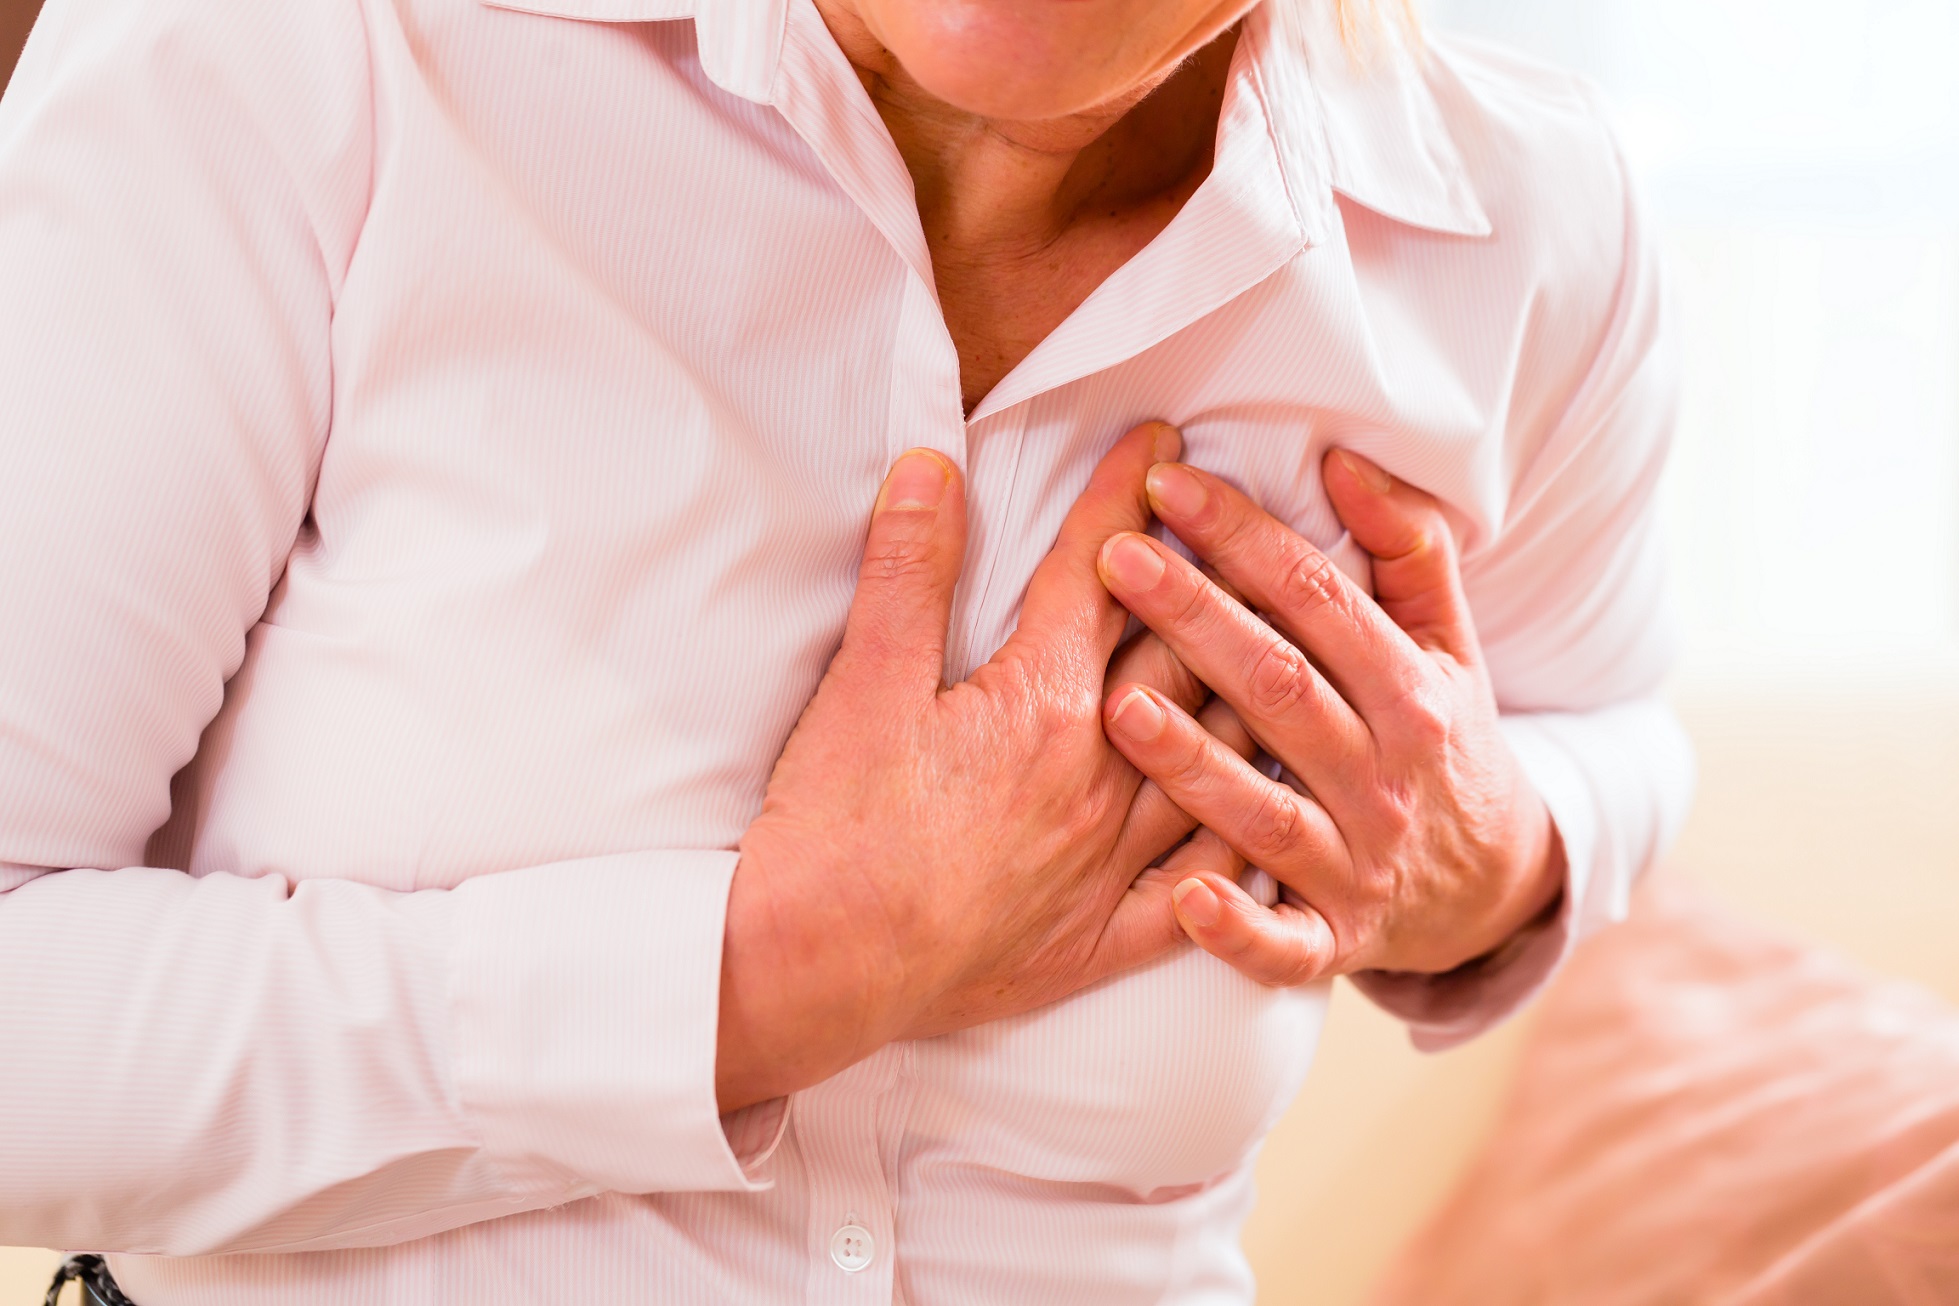 Le risque d’infarctus du myocarde est souvent méconnu chez les femmes, alors qu'elles sont de plus en plus victimes de maladies cardiovasculaires. © Kzenon, Shutterstock